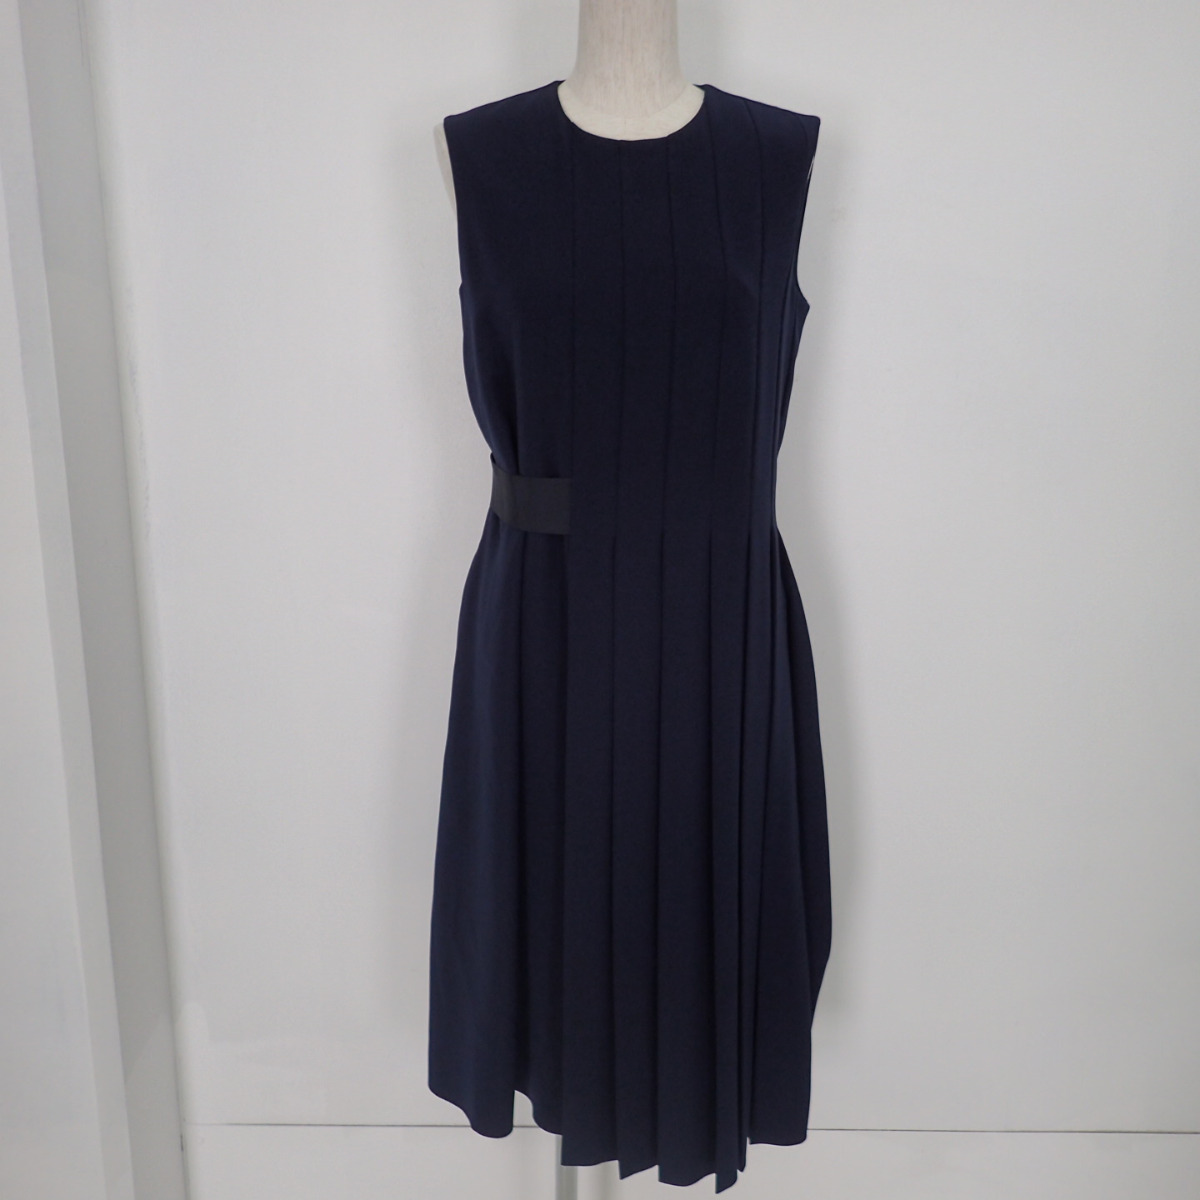 フォクシーのネイビー 35062 Asymmetrical Pleat Dress アシンメトリカル プリーツドレスの買取実績です。